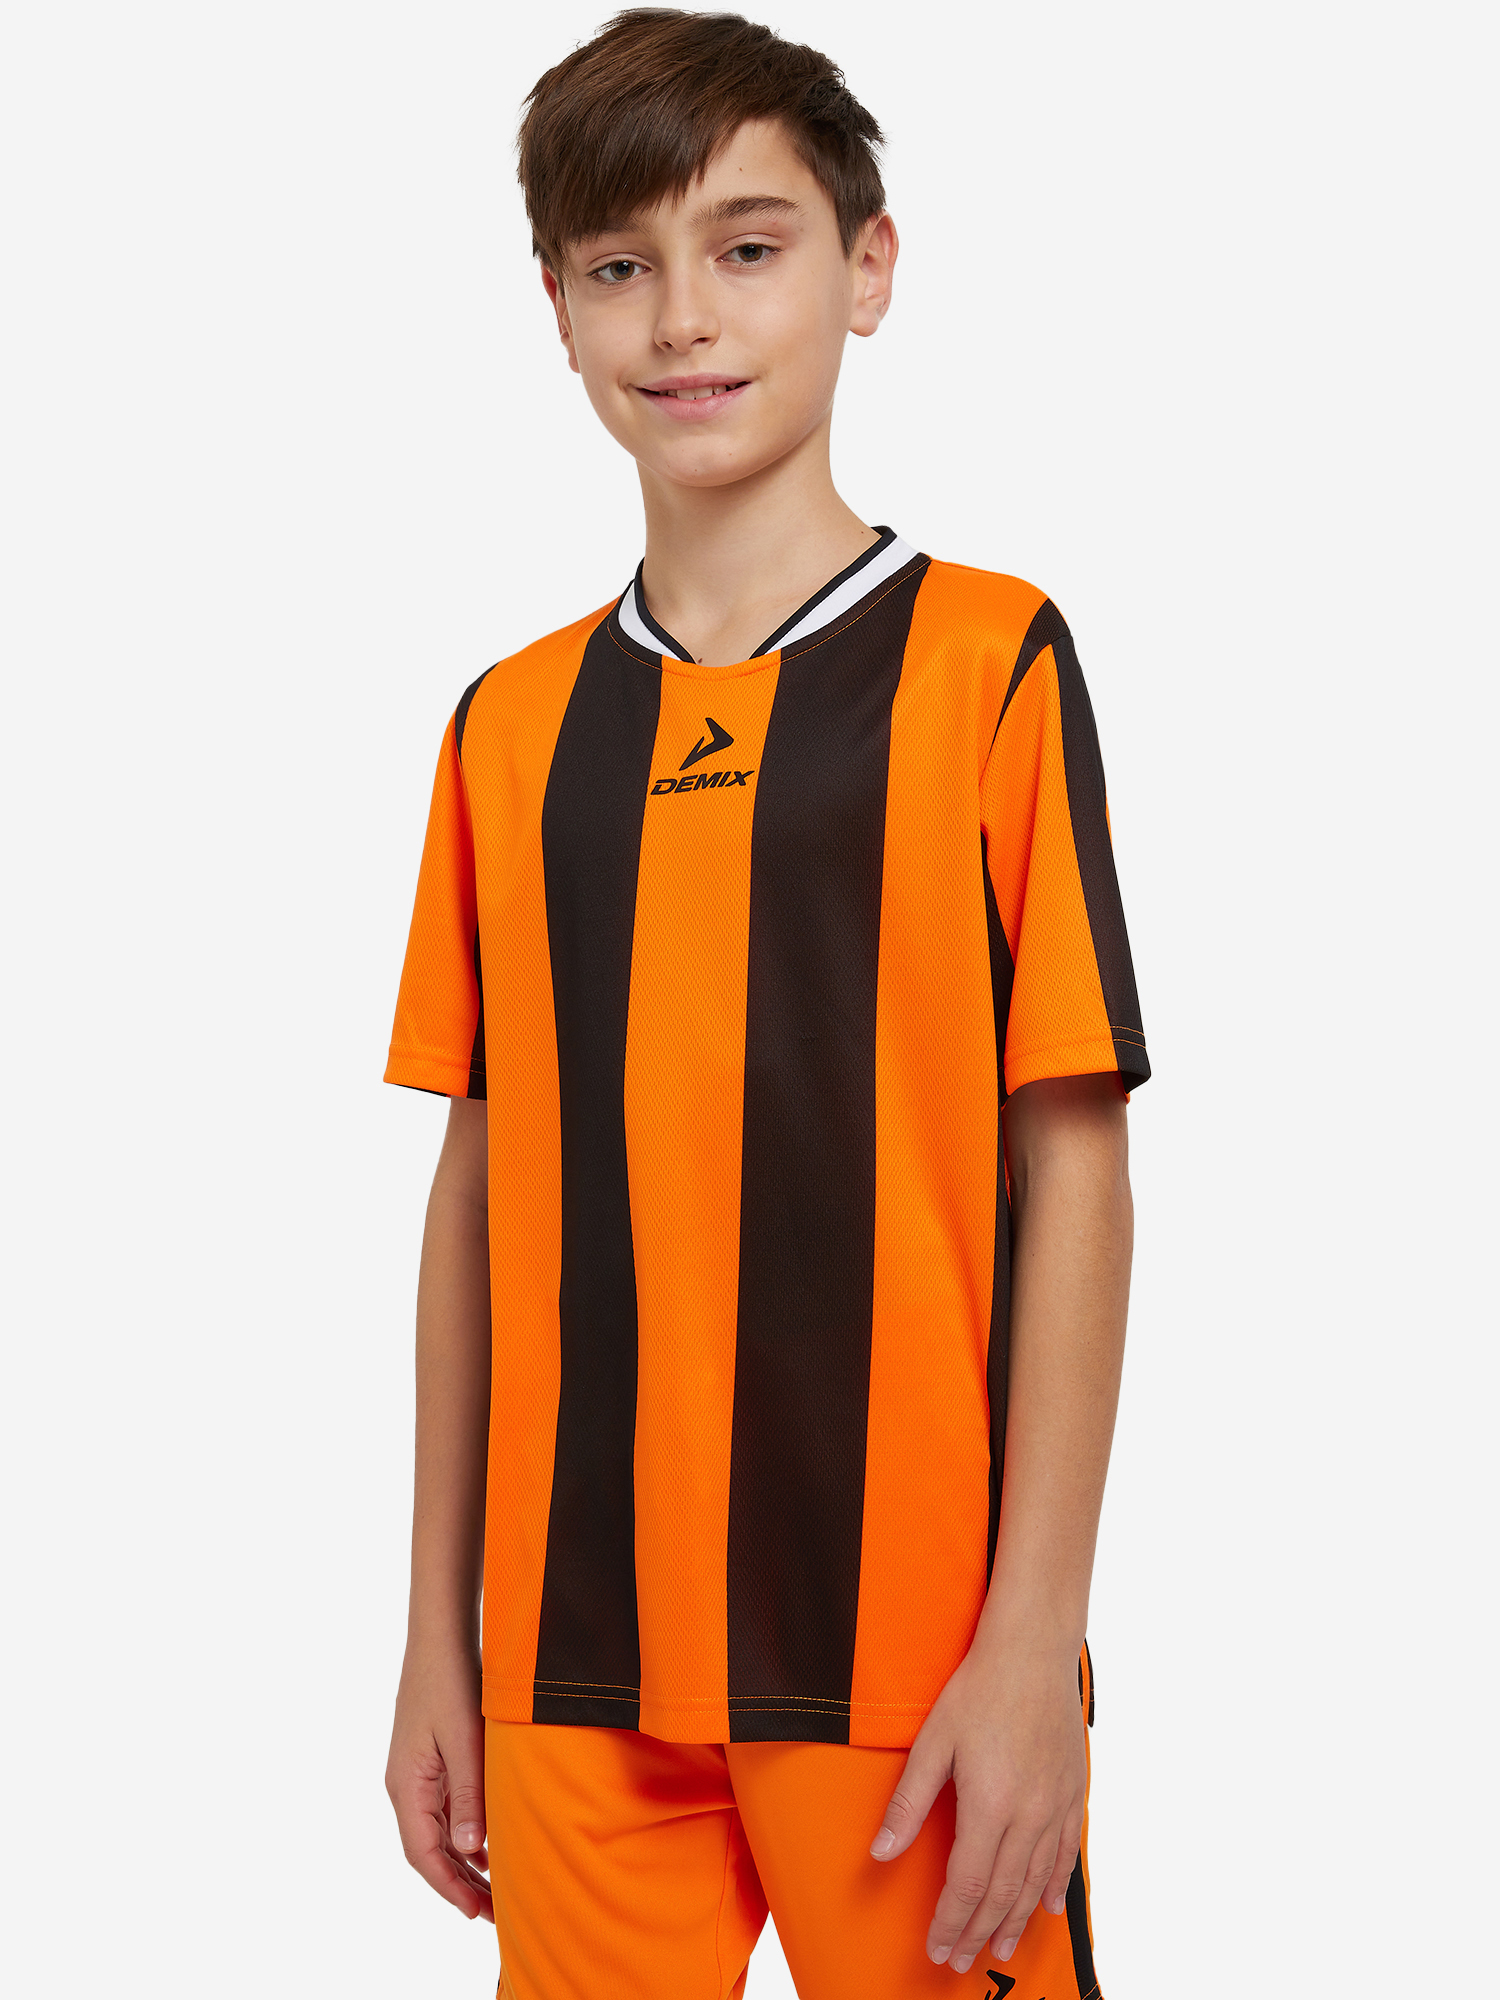 Футболка для мальчиков Demix Legacy, Оранжевый футболка для мальчиков demix strike оранжевый